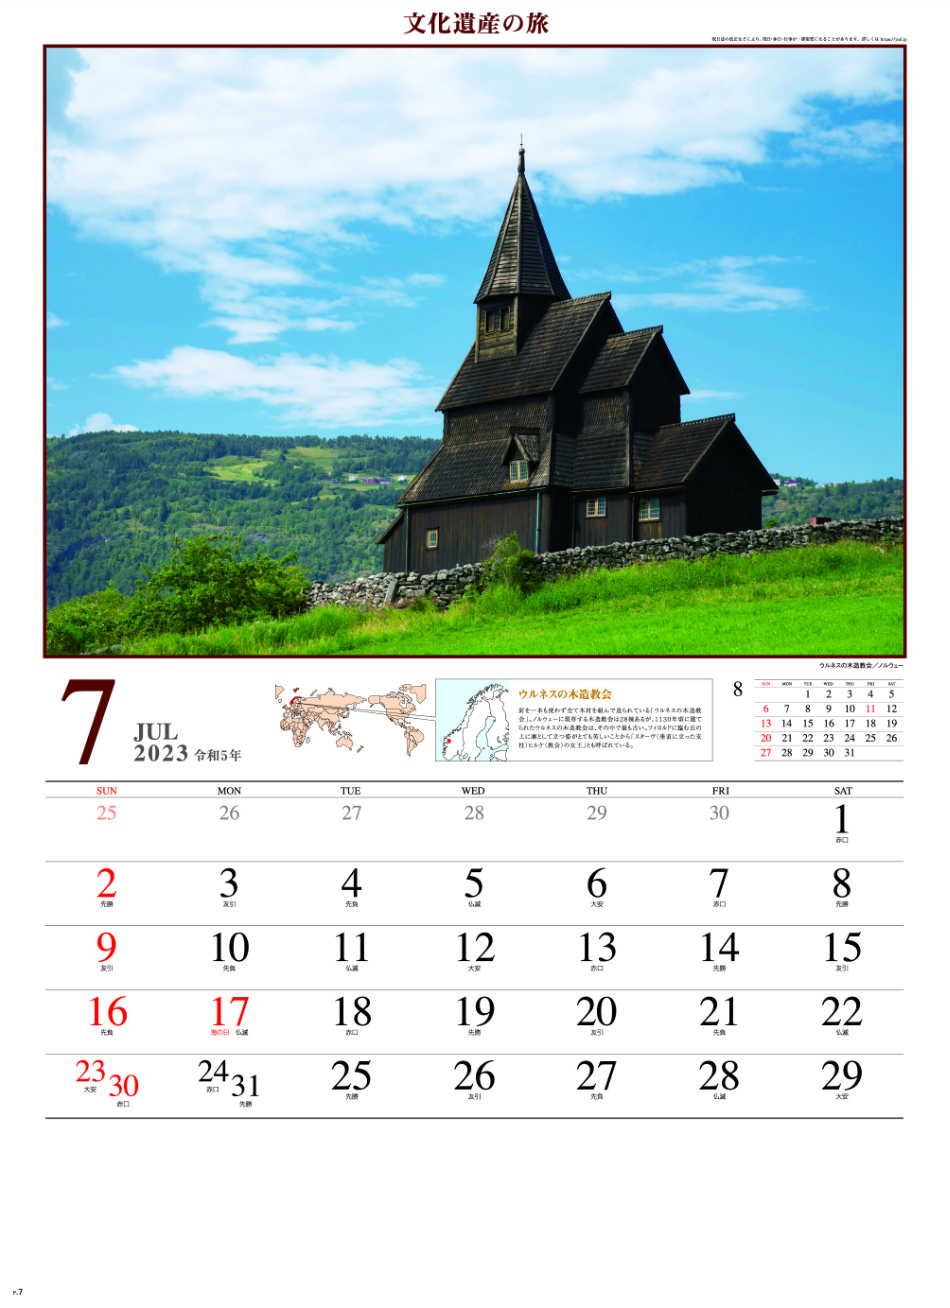 7月 ウルネスの木造教会(ノルウェー) 文化遺産の旅(ユネスコ世界遺産） 2023年カレンダーの画像